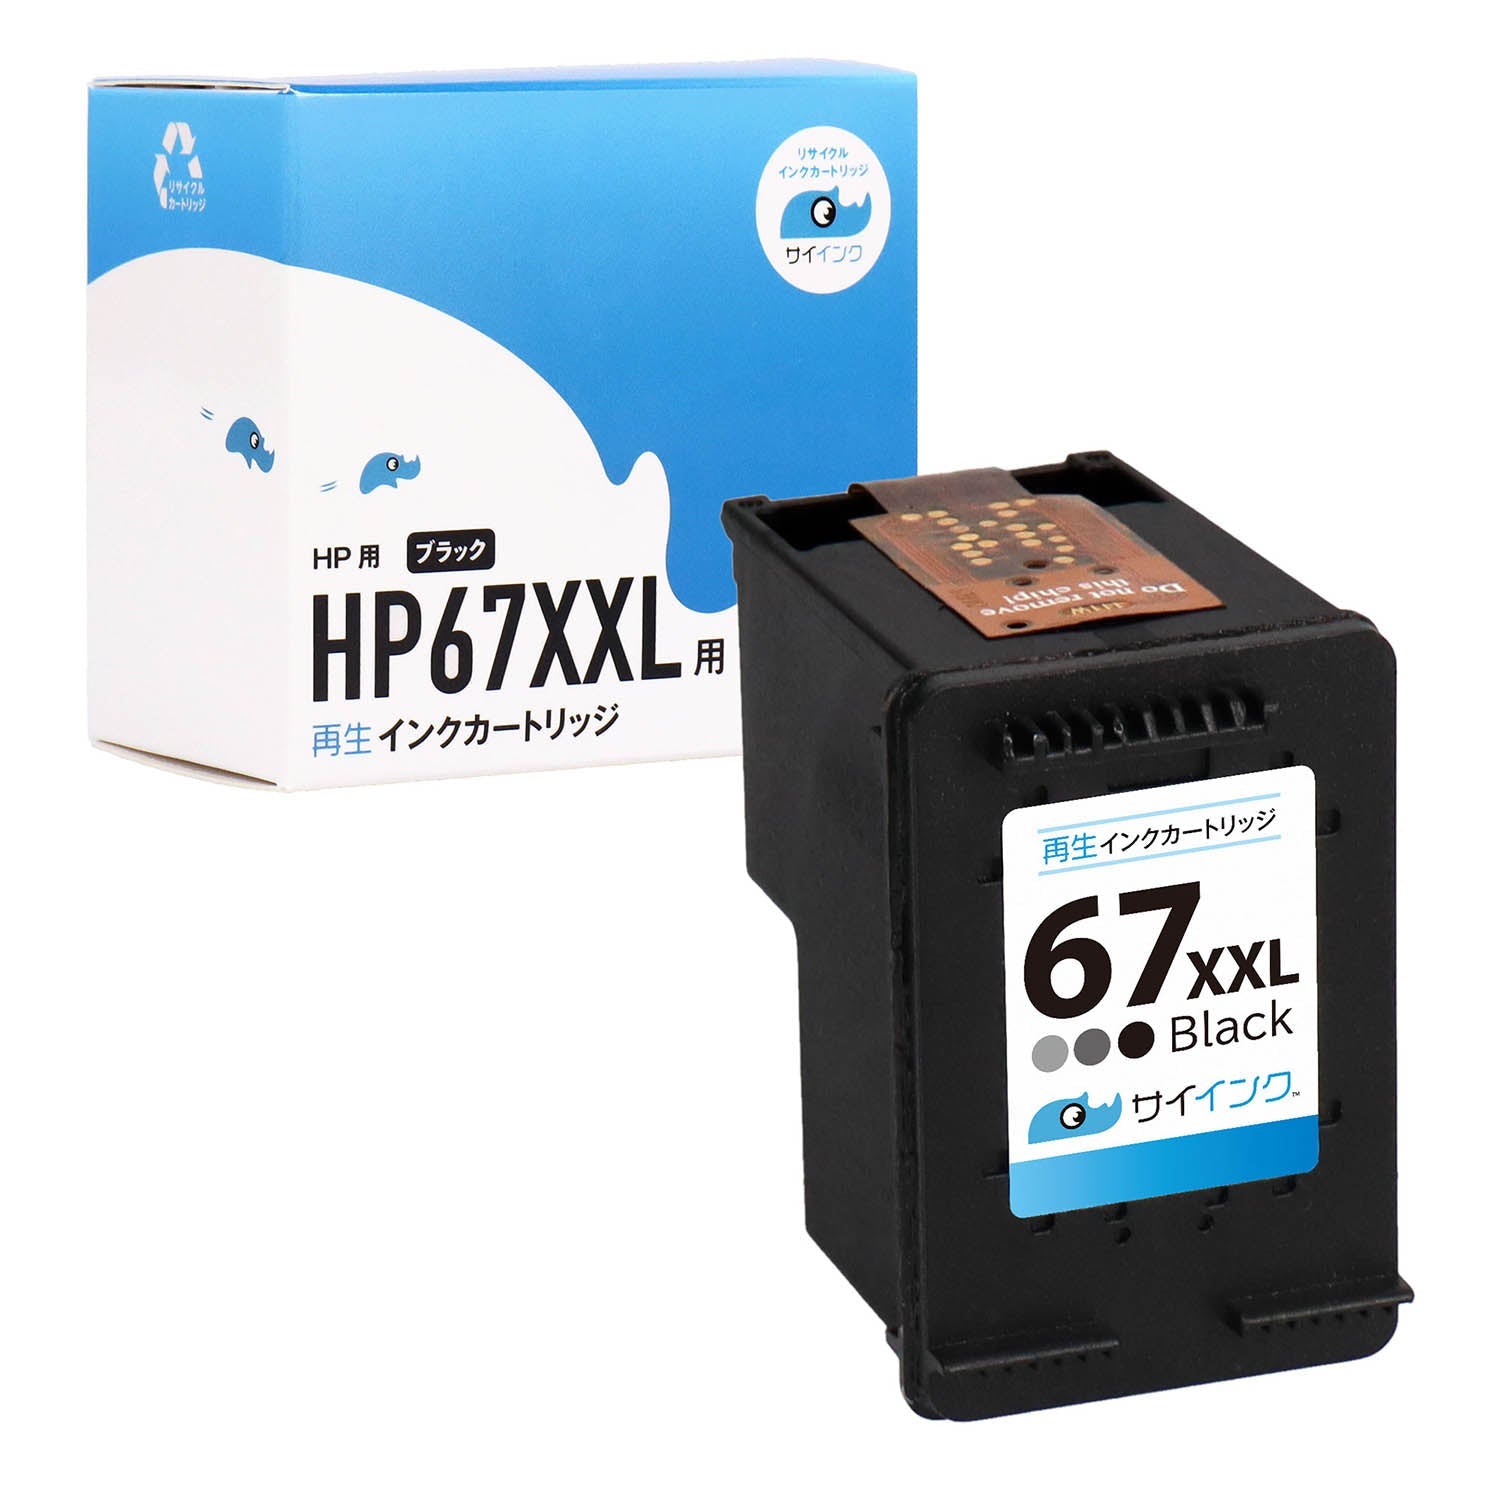 HP用 HP 67XXL 再生インク ブラック 増量版